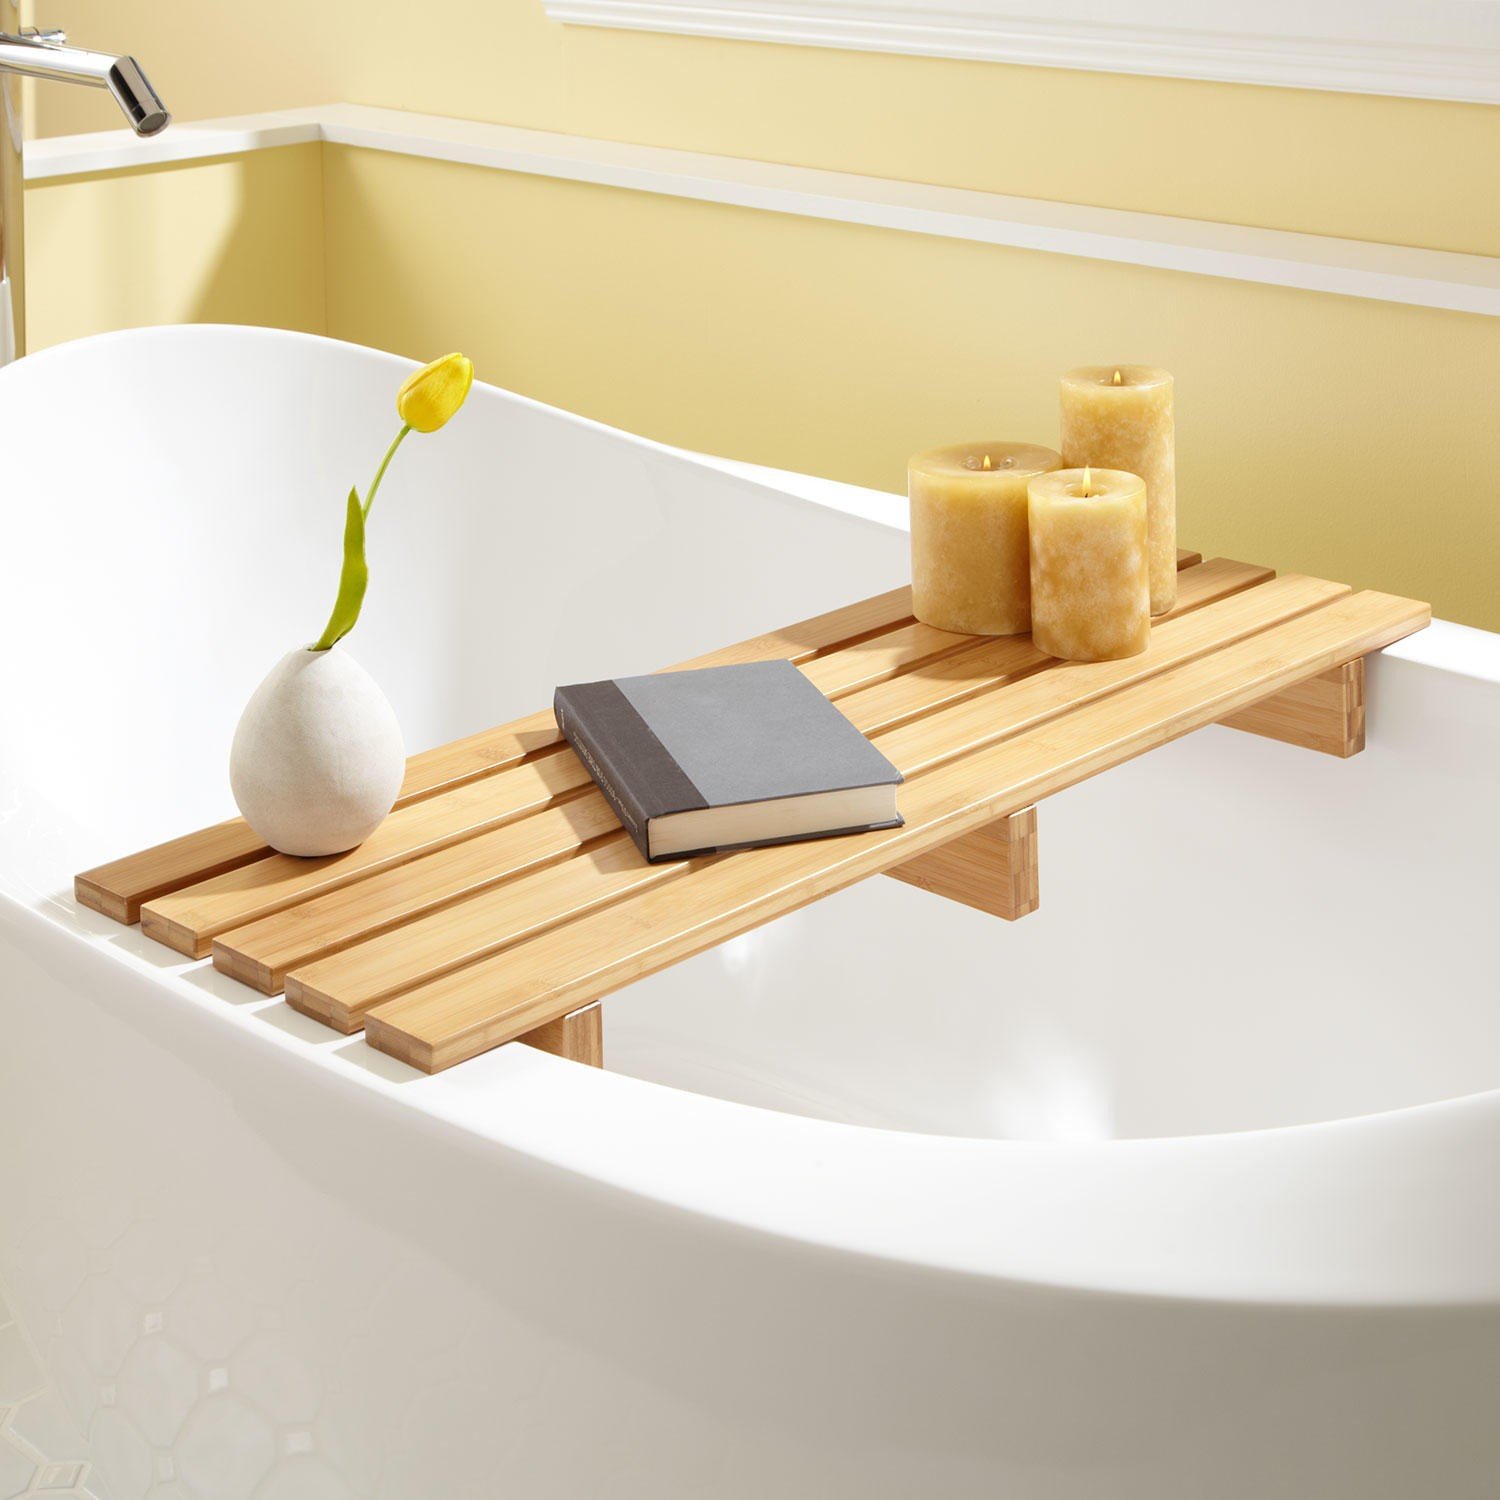 Подставки в ванную купить. Подставка на ванну деревянная. Полочка на ванну деревянная. Сидушка в ванную деревянная. Деревянная полка в ванную.